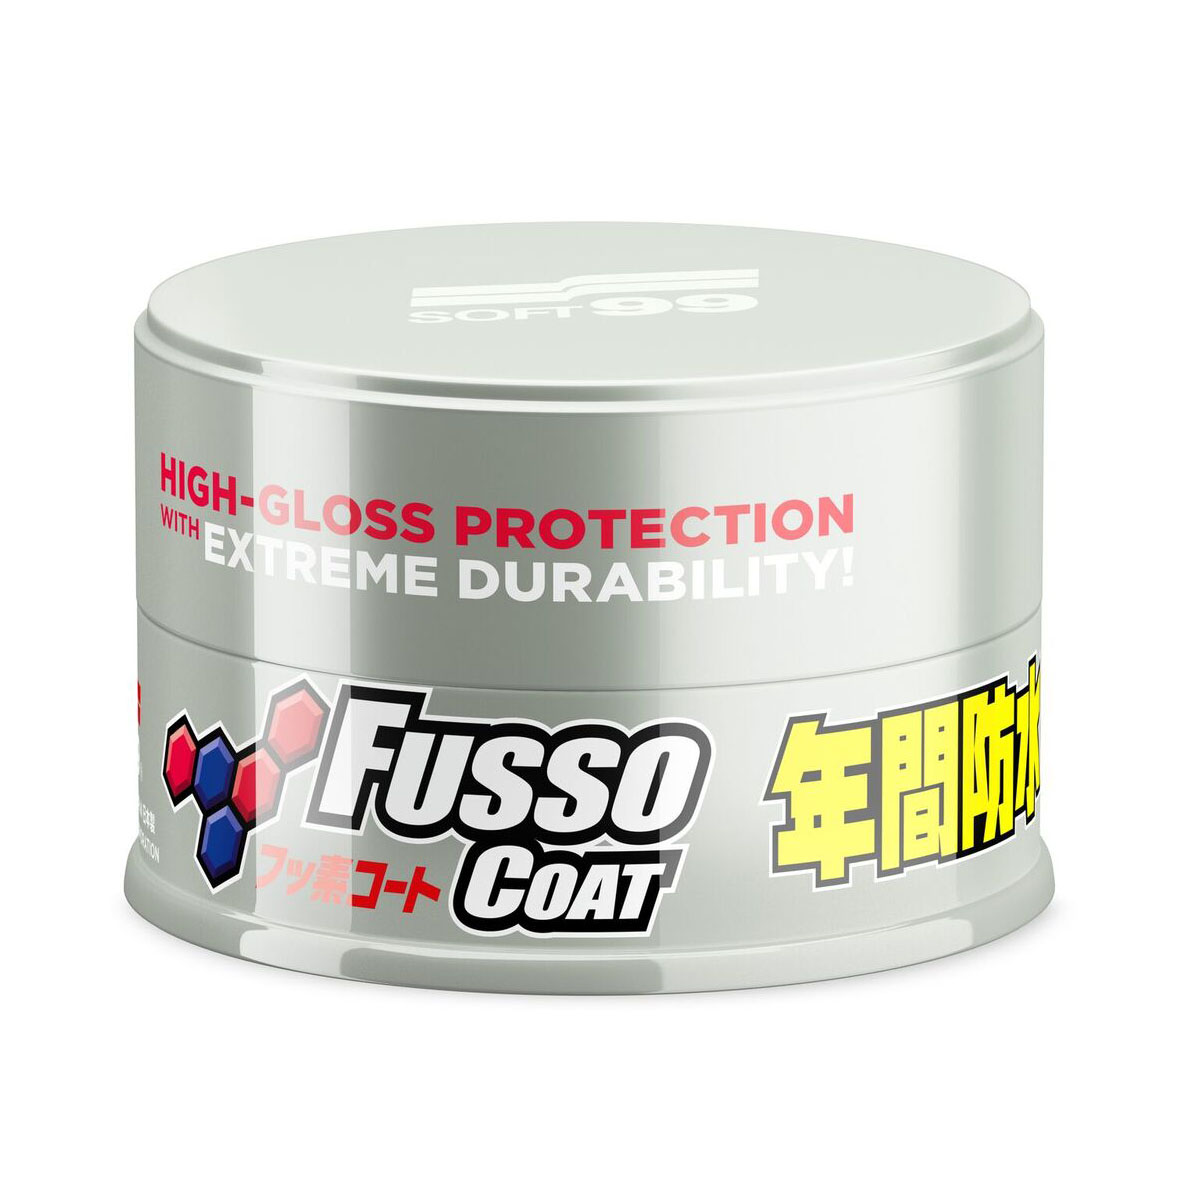 Bilvoks Soft99 Fusso Coat White (2.0), 200 g, Voks + applikator